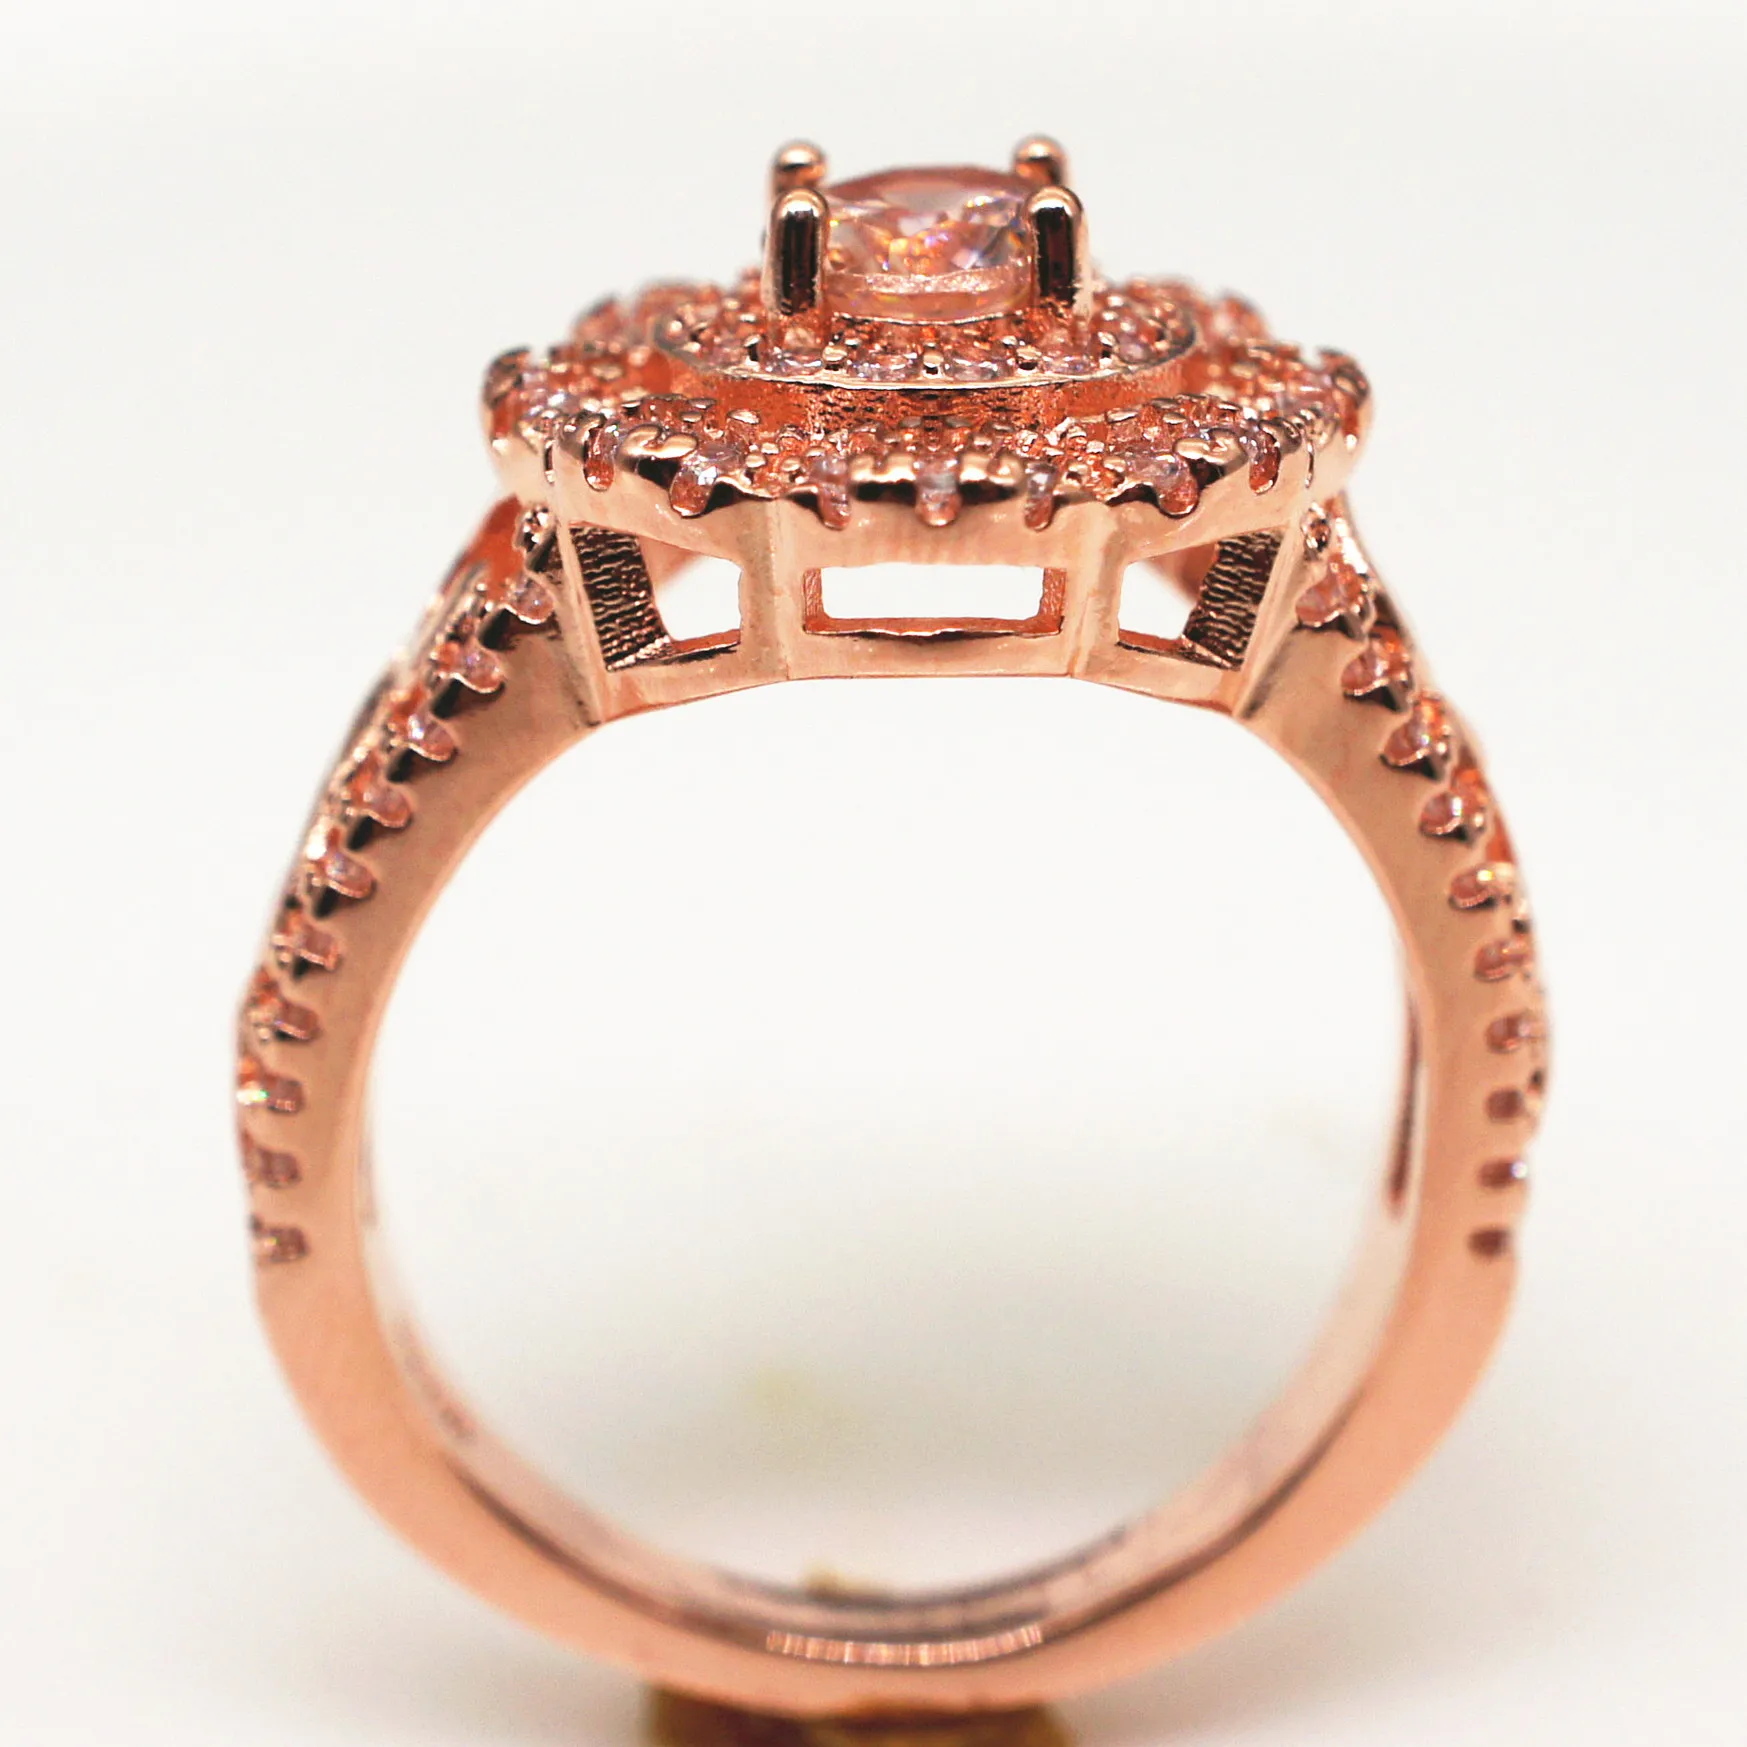 Женское кольцо Горячая полное покрытие розовое золото кольцо Европейская красота Роскошный цветок женское кольцо